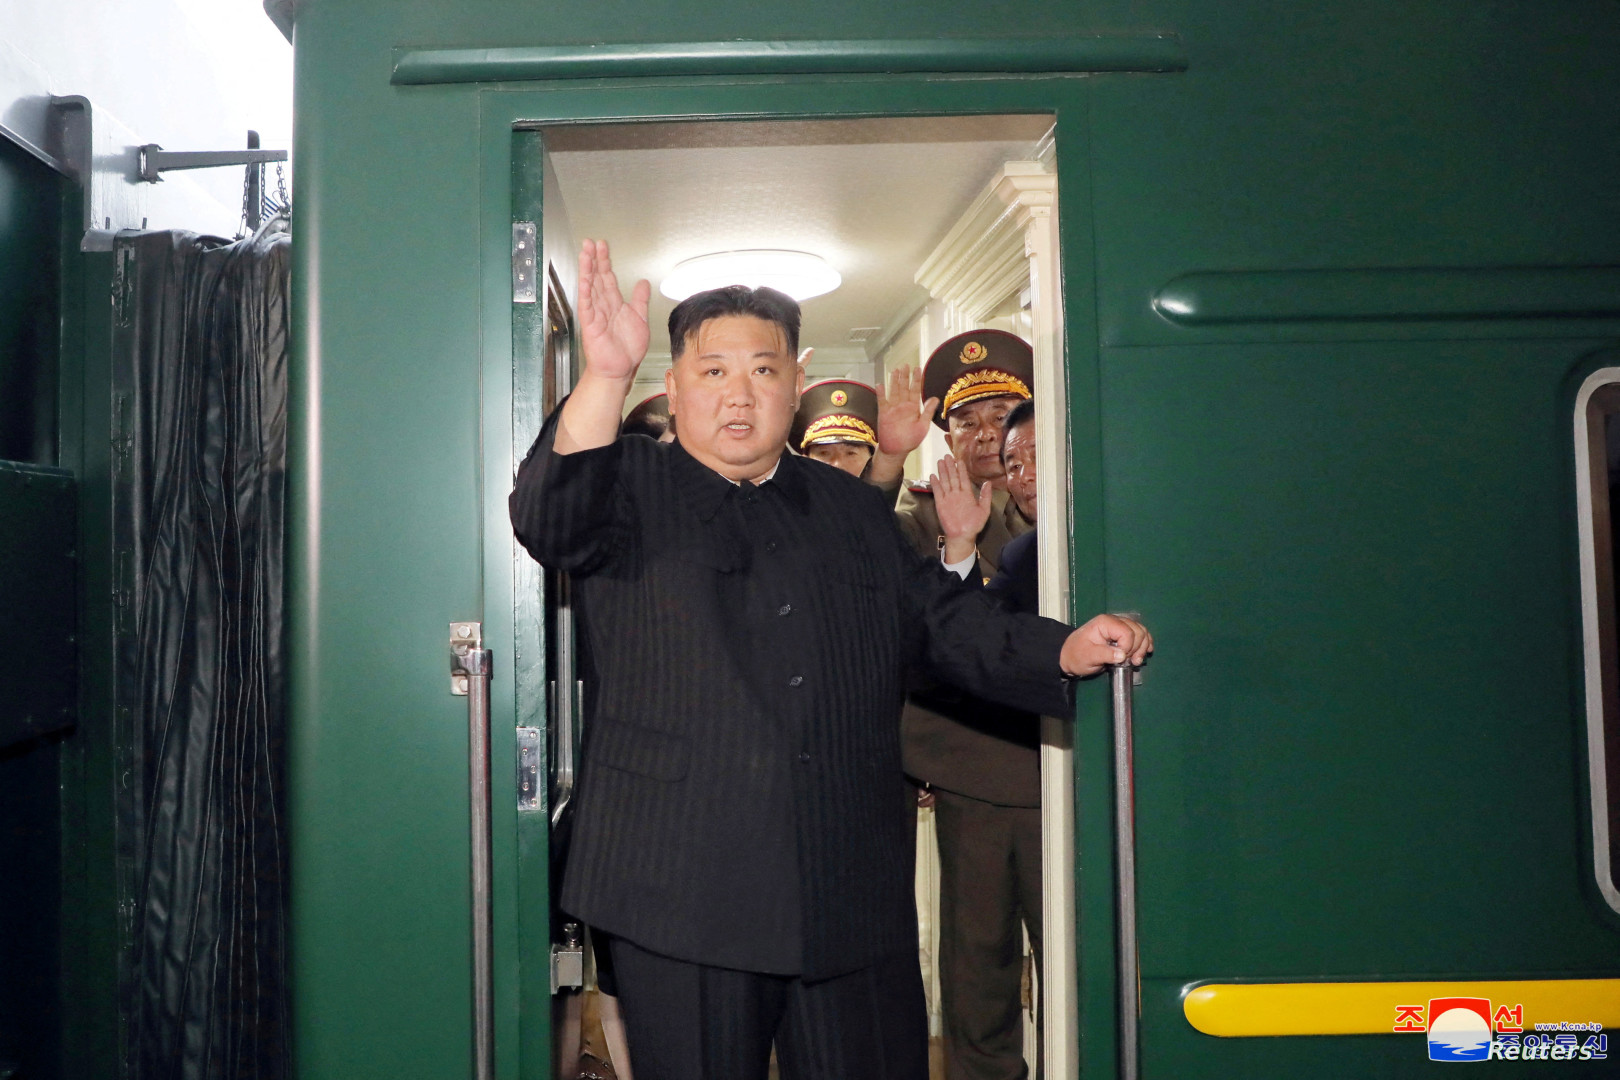 زعيم كوريا الشمالية يصل إلى روسيا على متن قطار مصفح